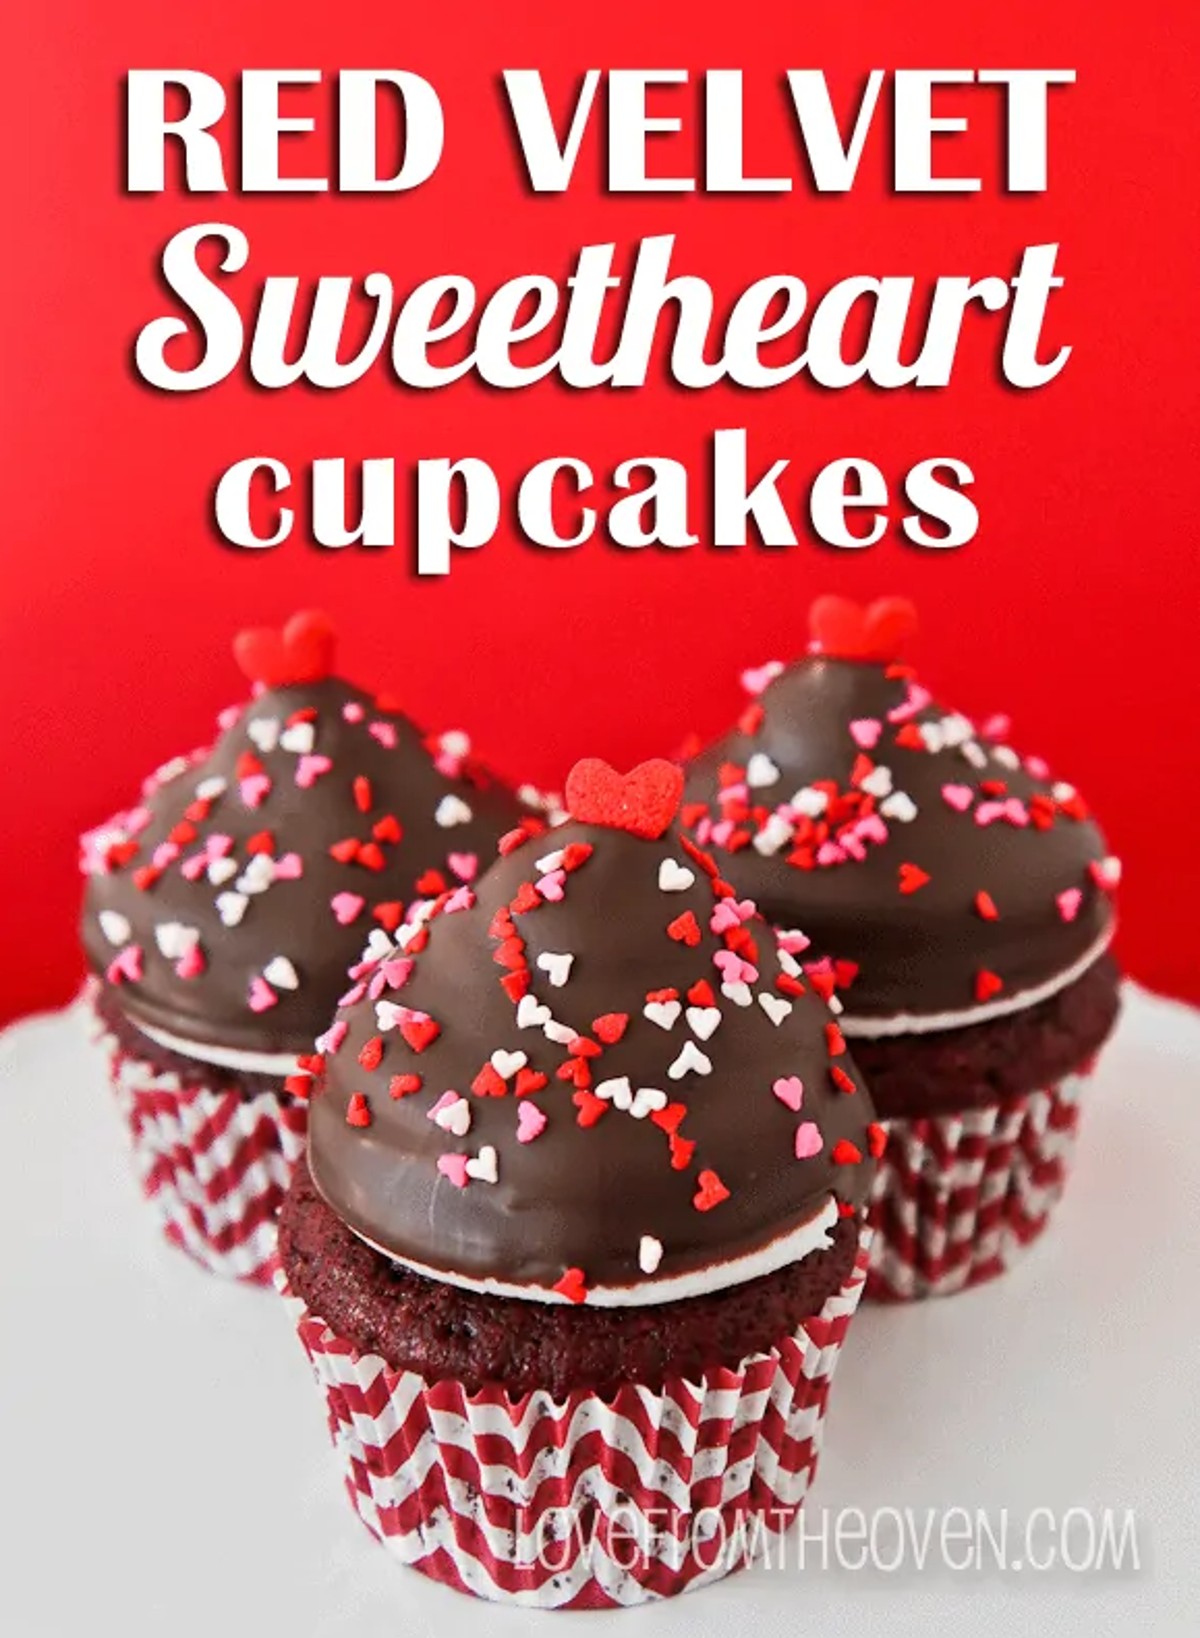 Red Velvet Sweetheart Cupcakes